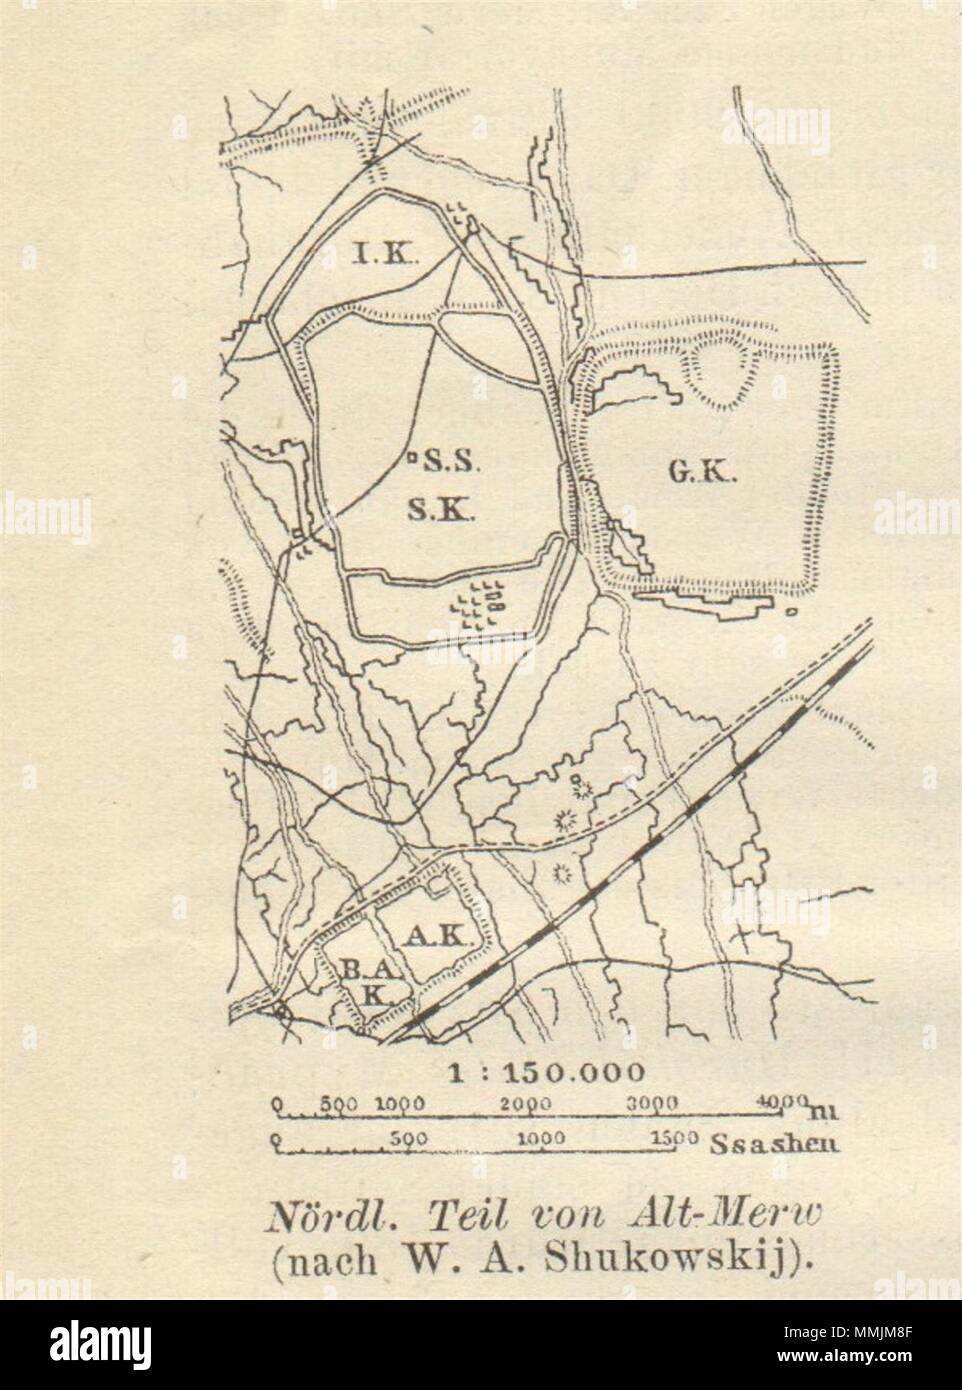 Parte Norte de Alt-Merw. . BAEDEKER 1912 antigüedades vintage mapa gráfico de plan Foto de stock